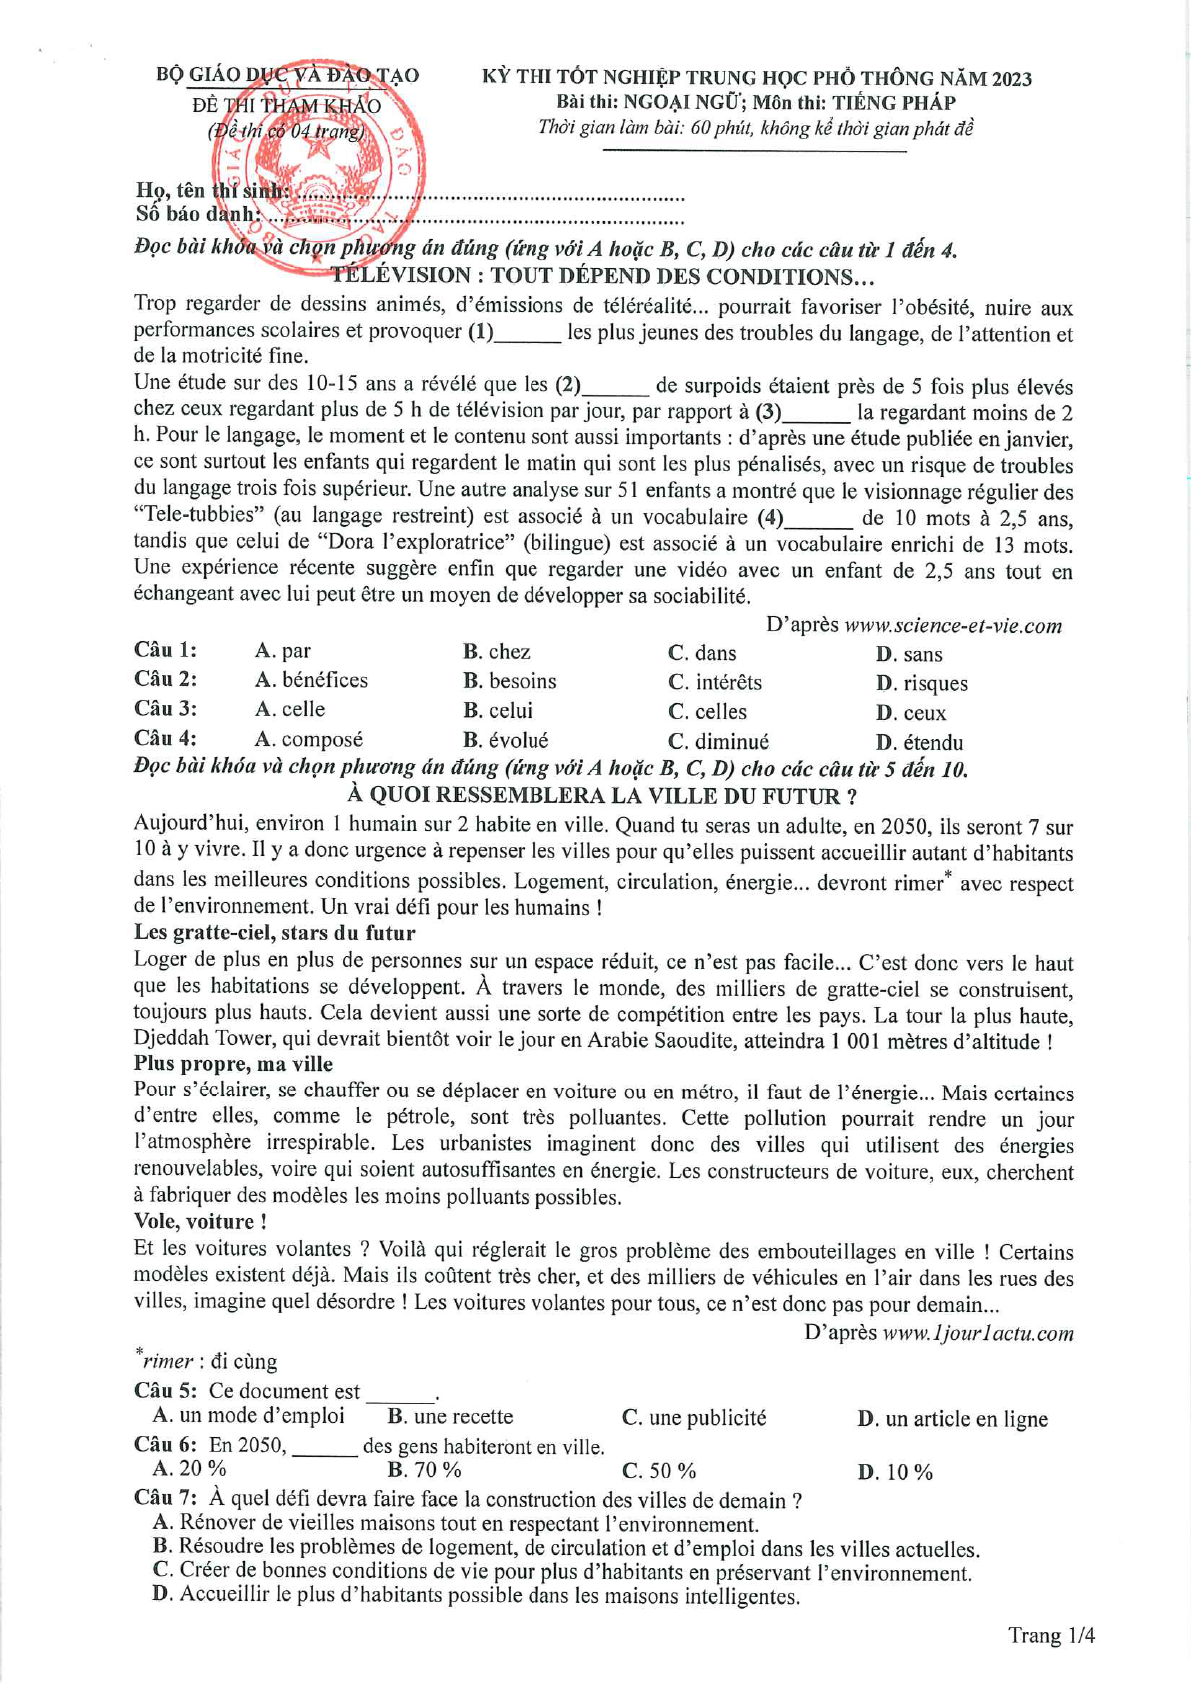 Đề tham khảo tốt nghiệp THPT môn Tiếng Pháp năm 2023 (có đáp án chi tiết) (ảnh 1)